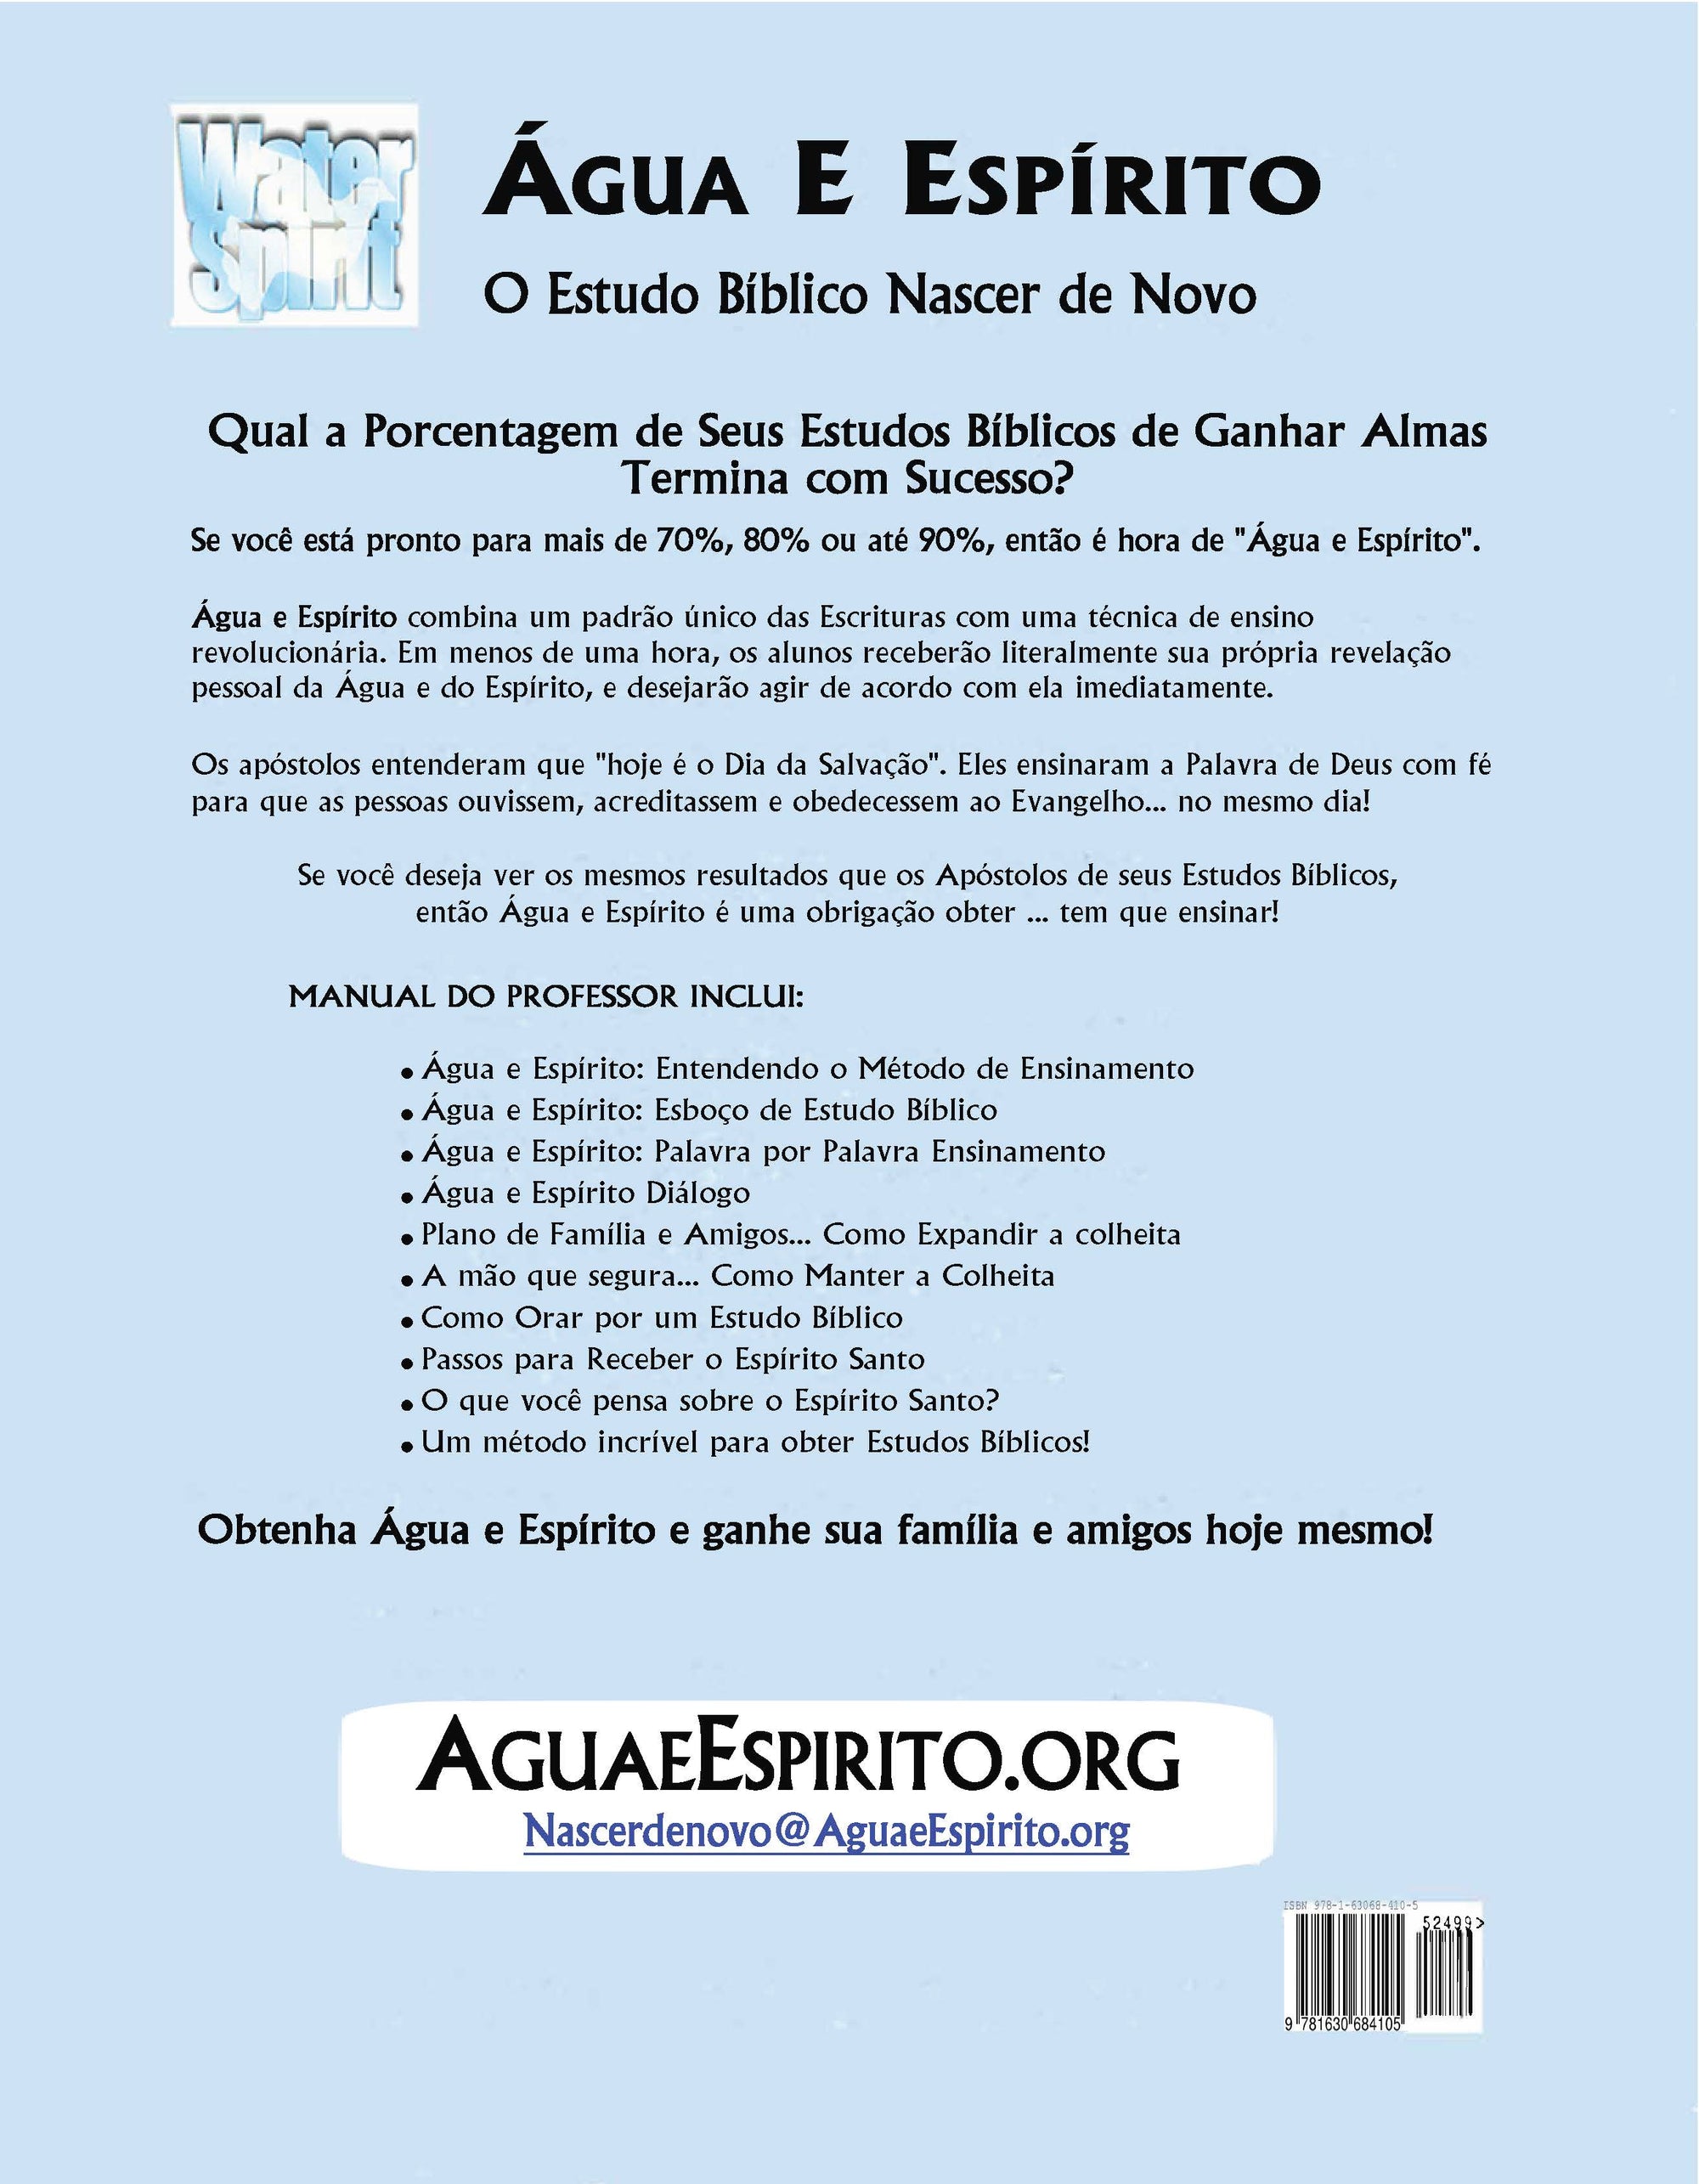 Água e Espírito Manual do Professor Português  + 5 Folhetos do Guia de Estudo